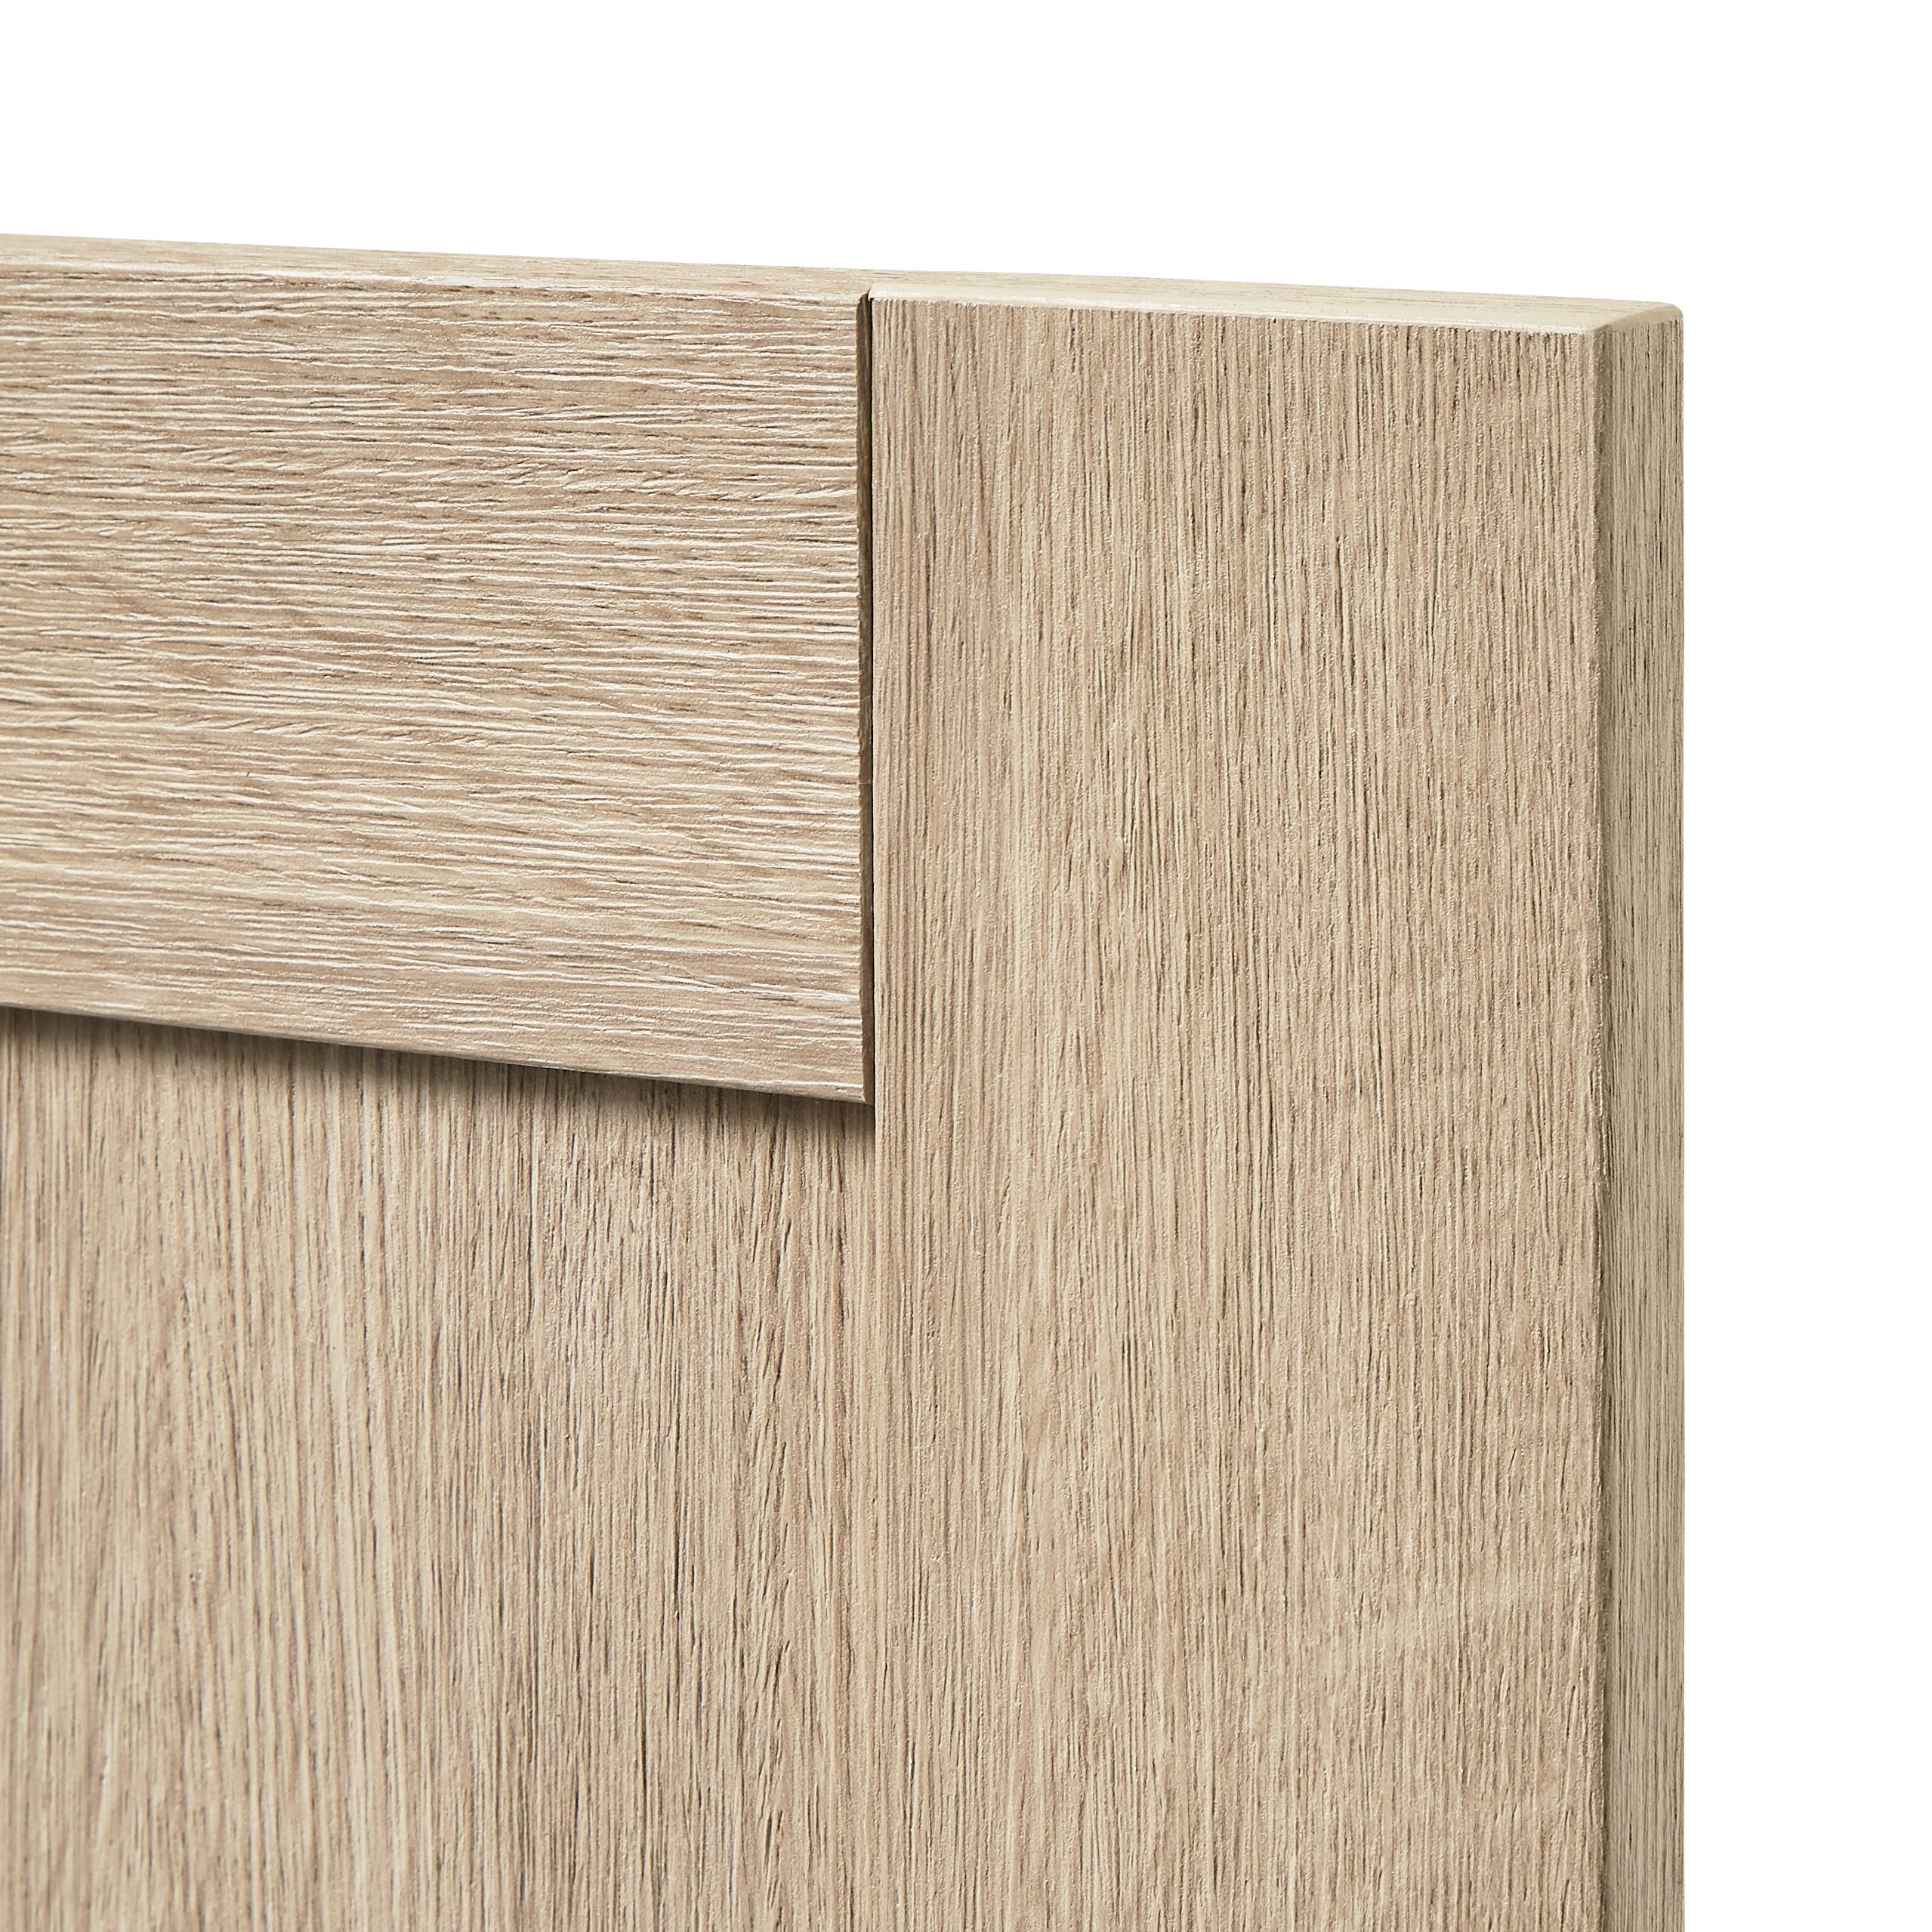 GoodHome Alpinia Oak effect shaker Drawer front, bridging door & bi fold door, (W)800mm (H)356mm (T)18mm